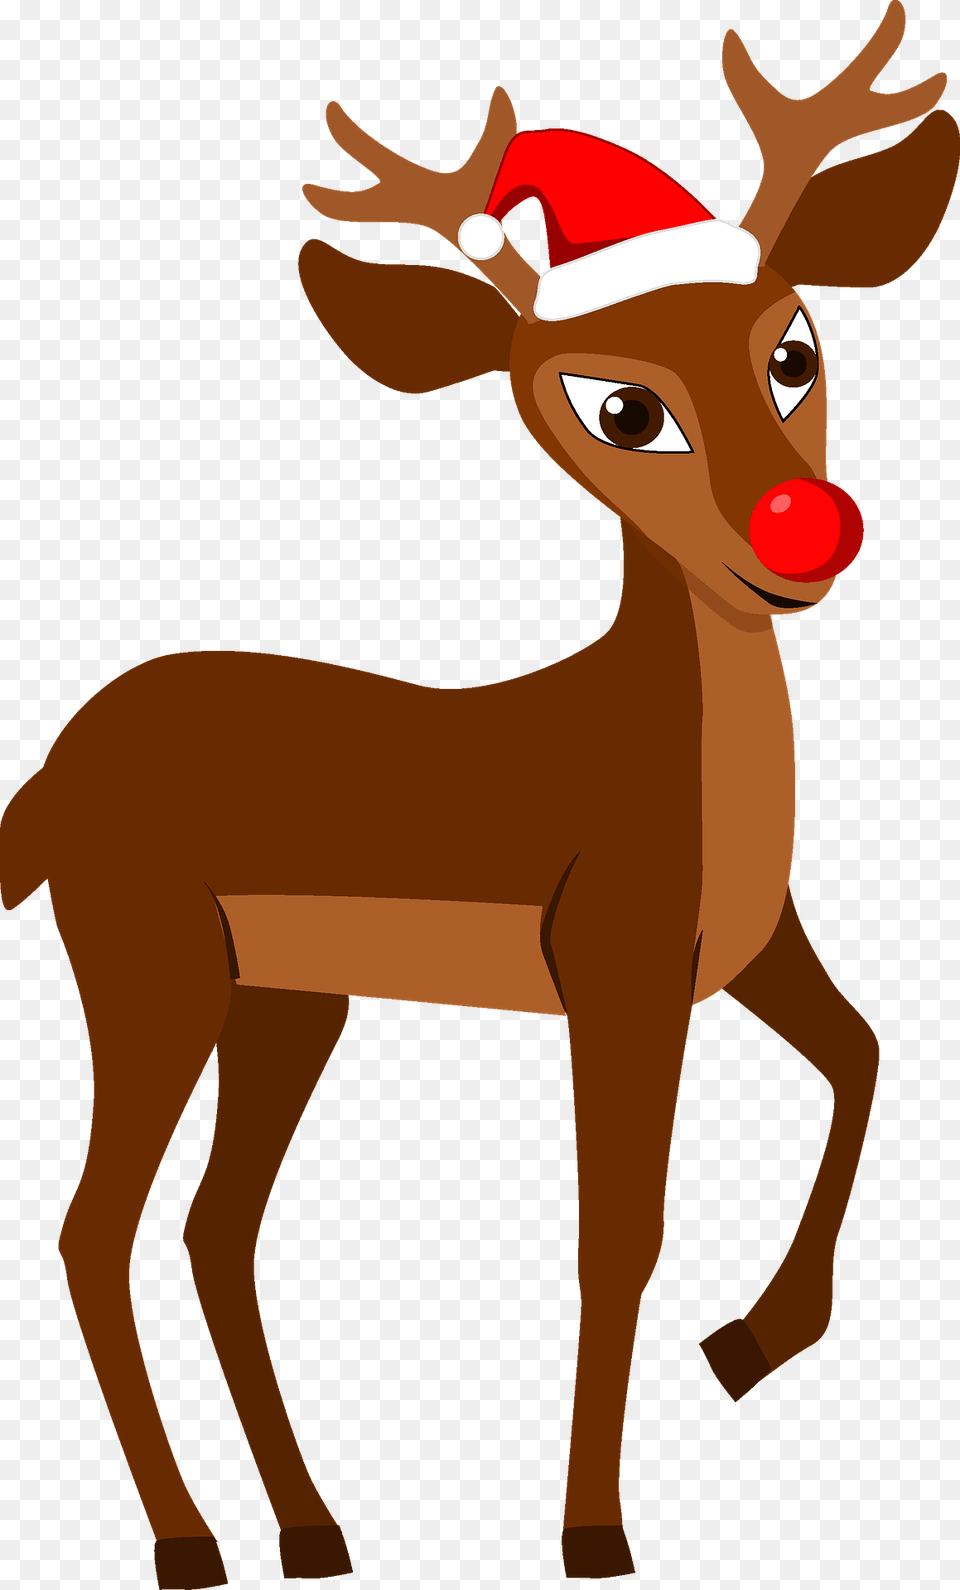 Red Nosed Christmas Reindeer Rudolph Cartoon, Animal, Deer, Mammal, Wildlife Png